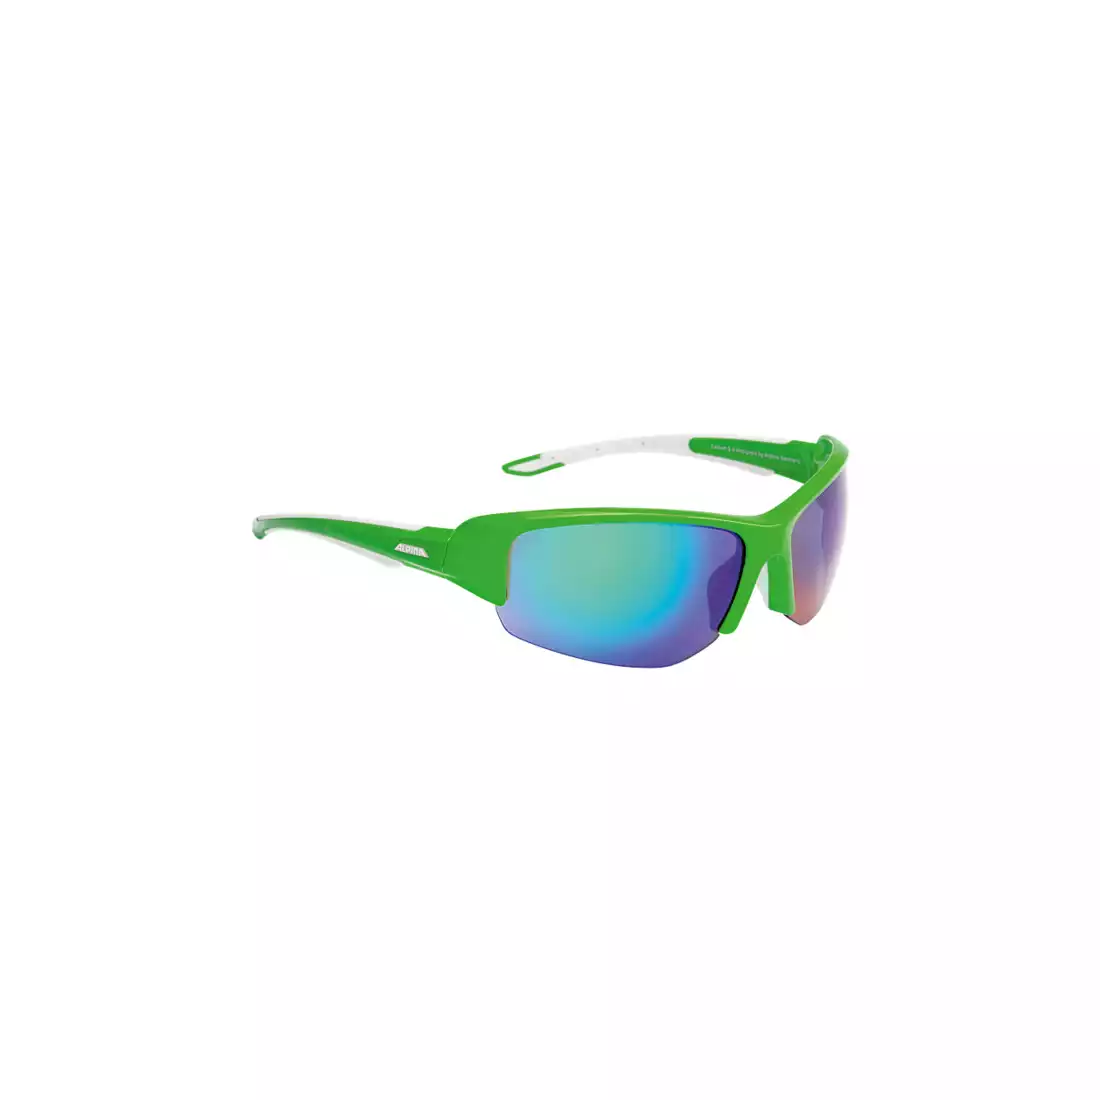 ALPINA - okulary sportowe CALLUM 2.0 - zielony-biały / szkło ceramic mirror ziel.